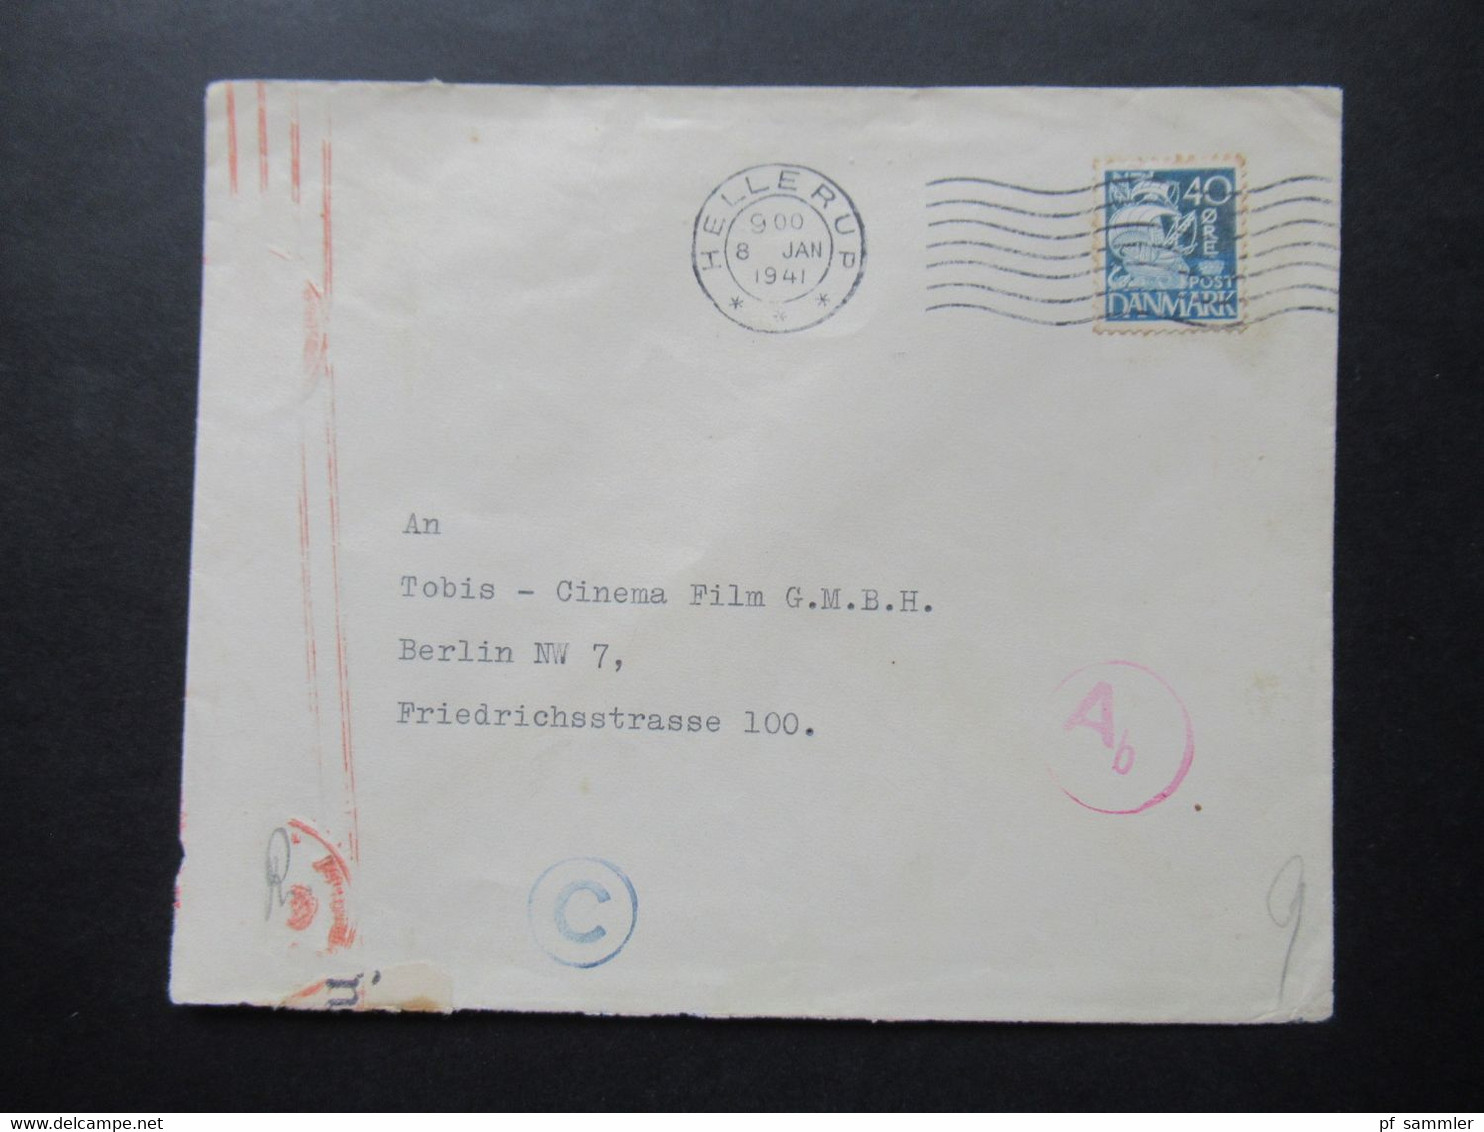 Dänemark 1941 Zensurbeleg / Mehrfachzensur OKW Zensurstreifen Geöffnet Cineastik Tobis Cinema Film Berlin - Briefe U. Dokumente